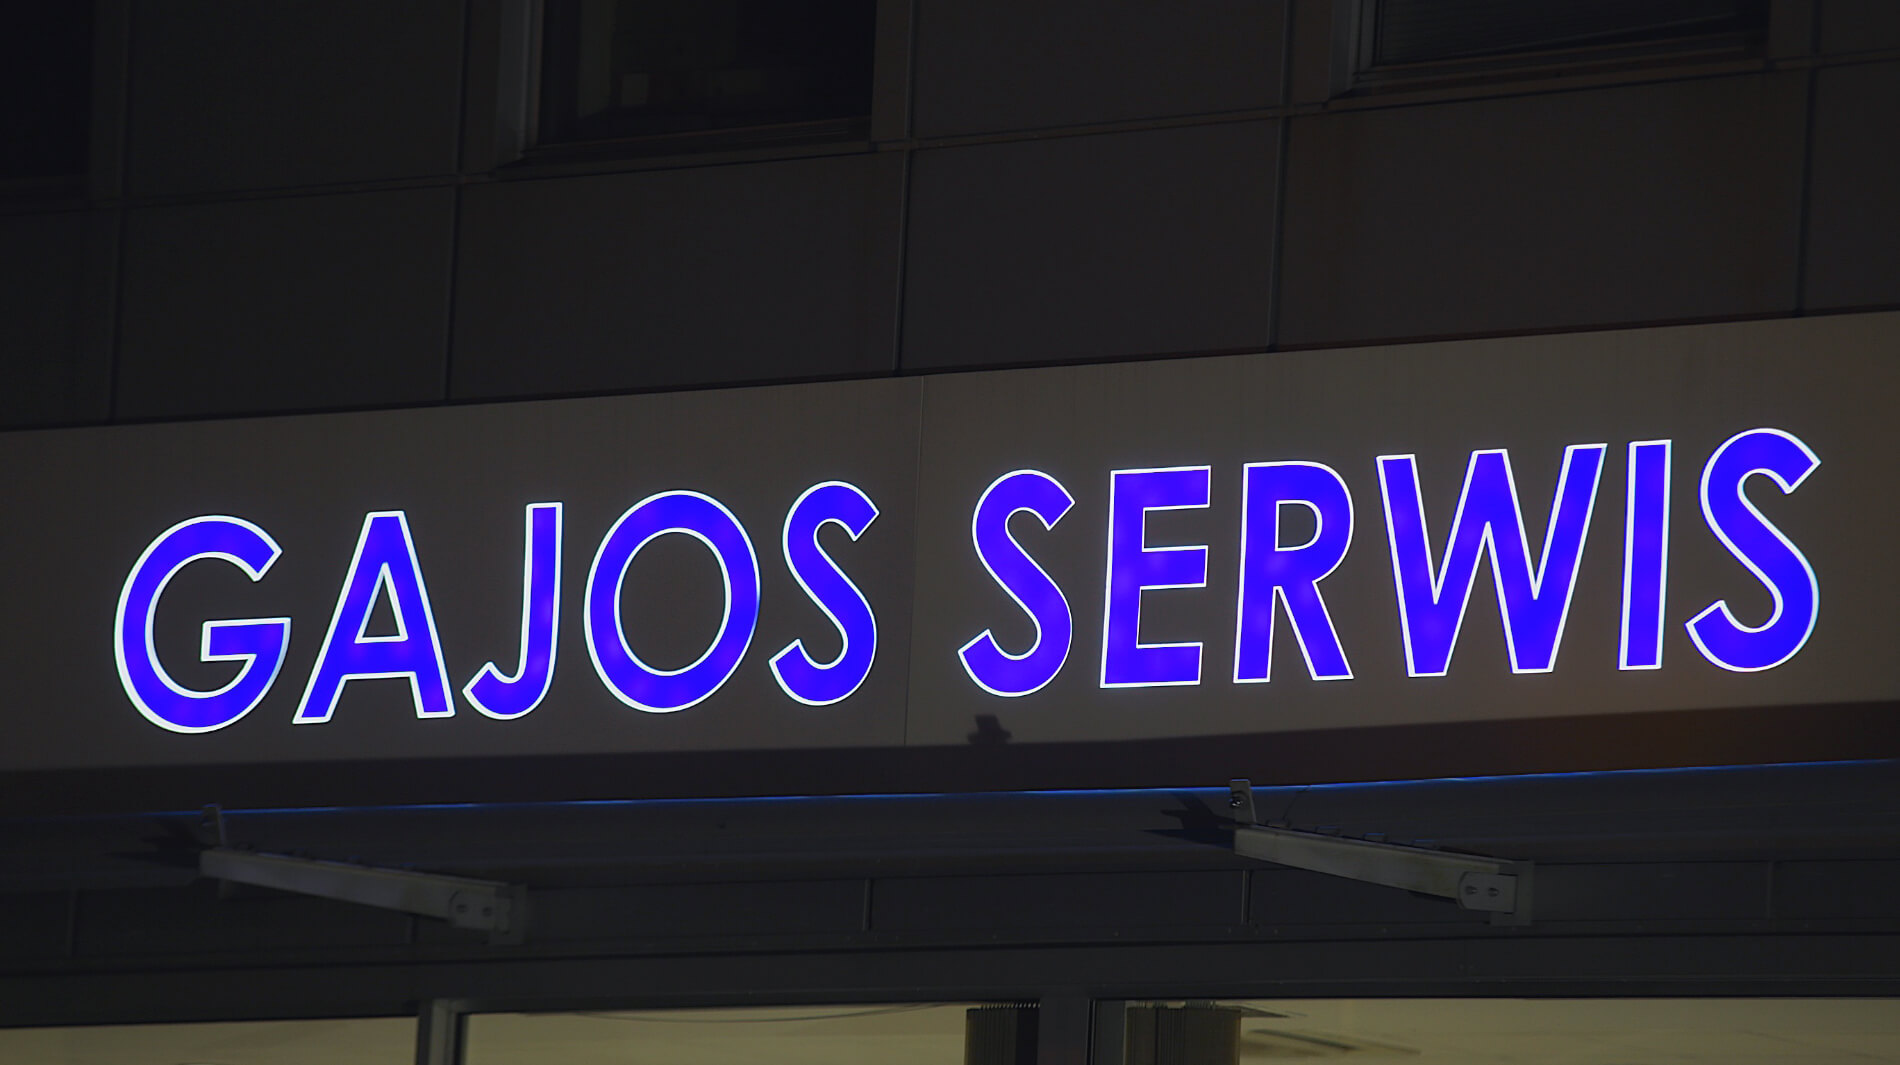 Gajos service - Gajos Serwis - caisson lumineux avec le nom de la société, lettres illuminées par une feuille translucide